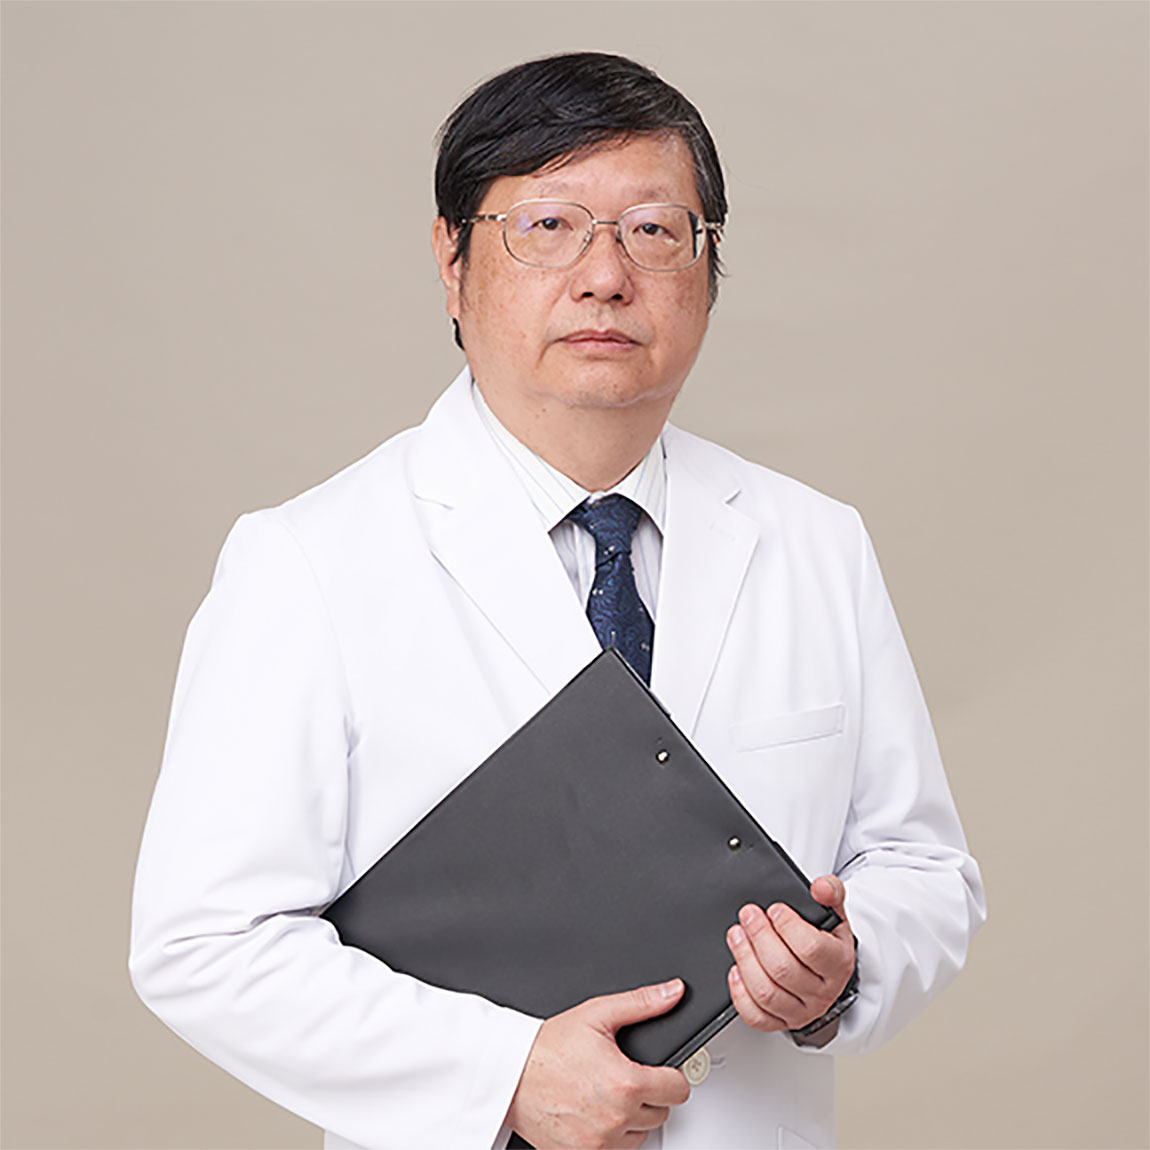 胡玉铭 Yu-Ming Hu, MD., 院长.